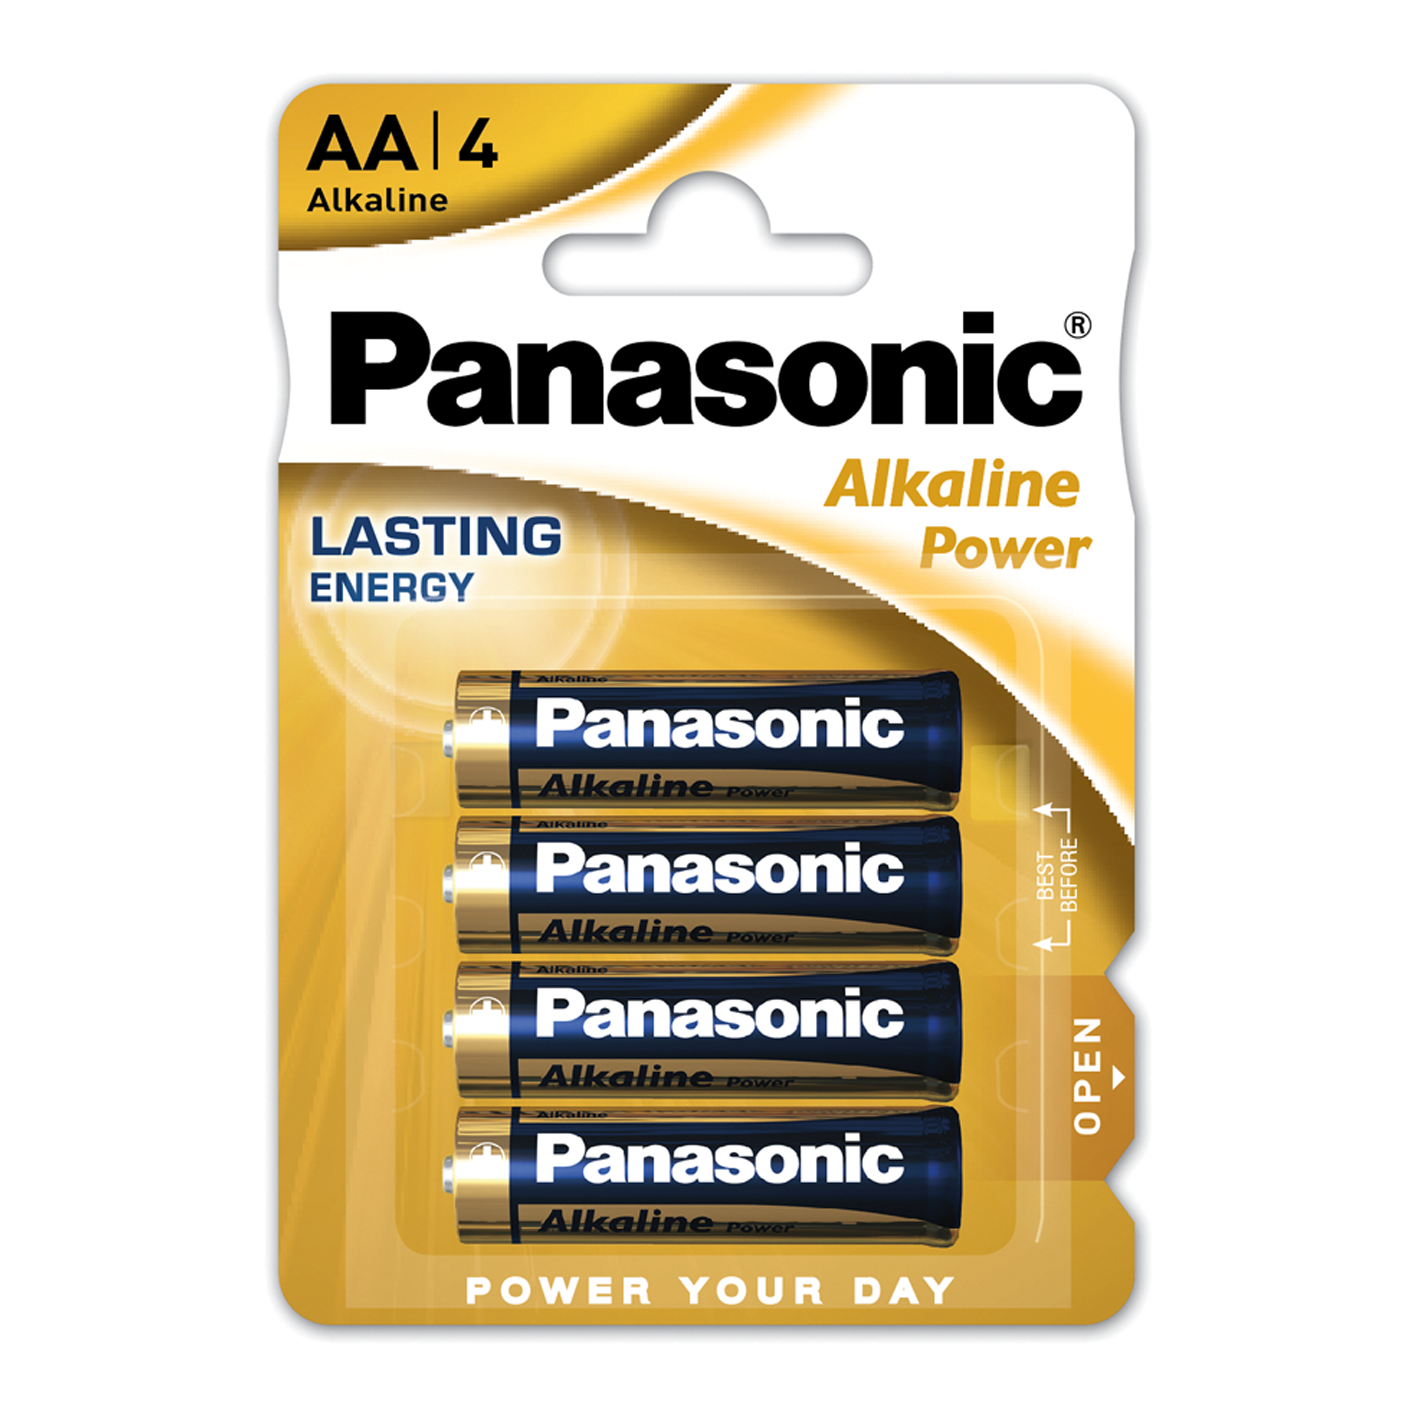 Panasonic AA Alkaline Power, Pack of 4